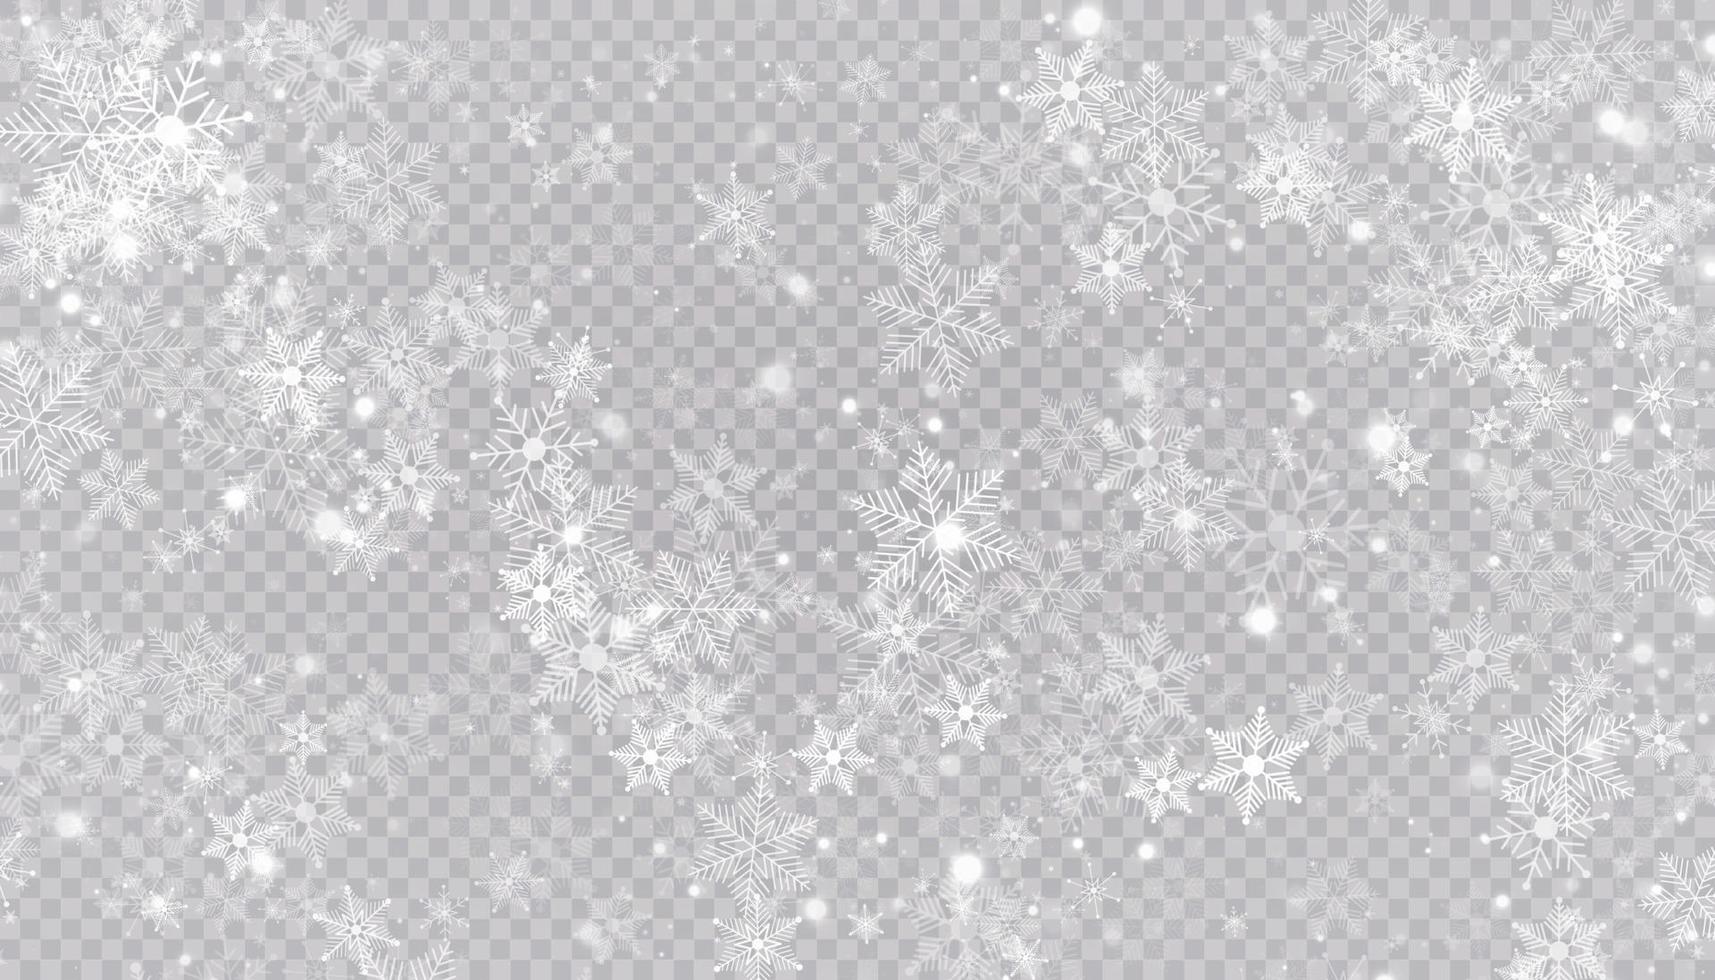 moscas blancas de la nieve. copos de nieve de navidad. Ilustración de fondo de ventisca de invierno. vector